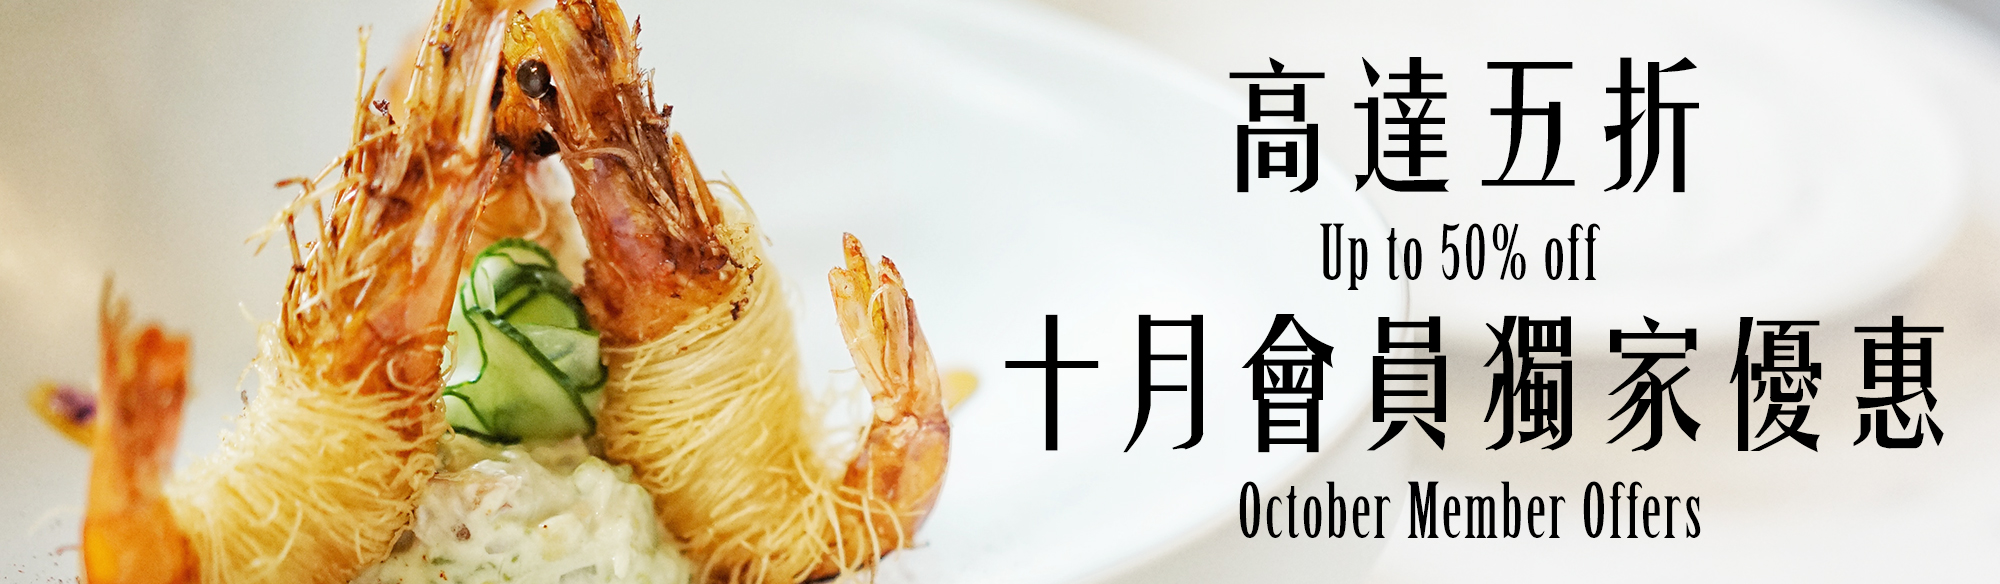 October Member offers - OKiBook Hong Kong and Macau Restaurant Buffet booking 餐廳和自助餐預訂香港和澳門 BANNER